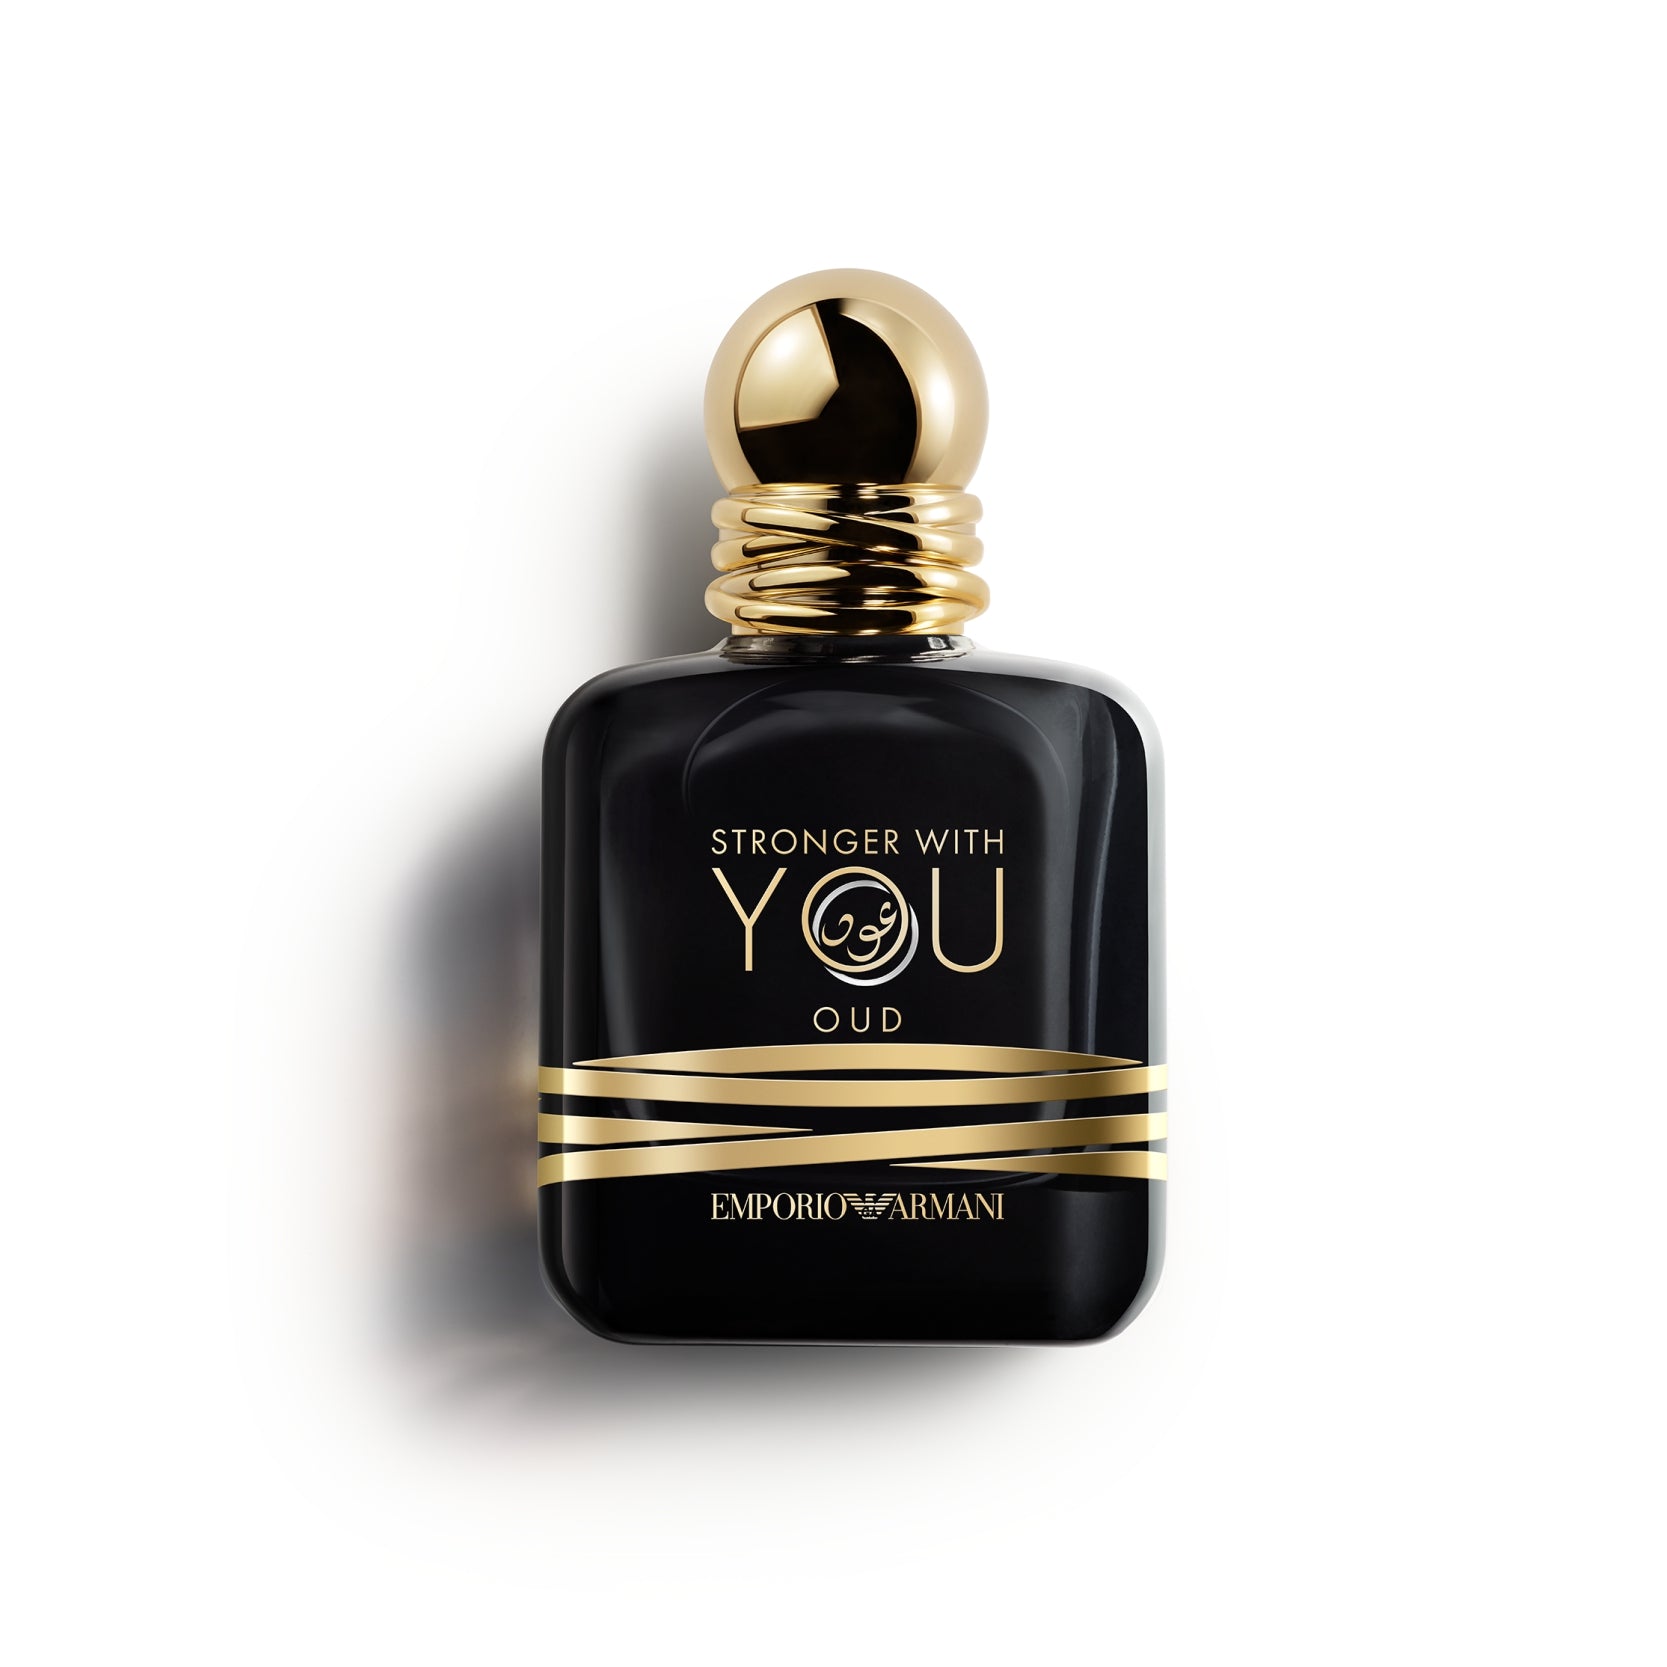 Stronger With You Oud, la nouvelle eau de parfum Emporio Armani